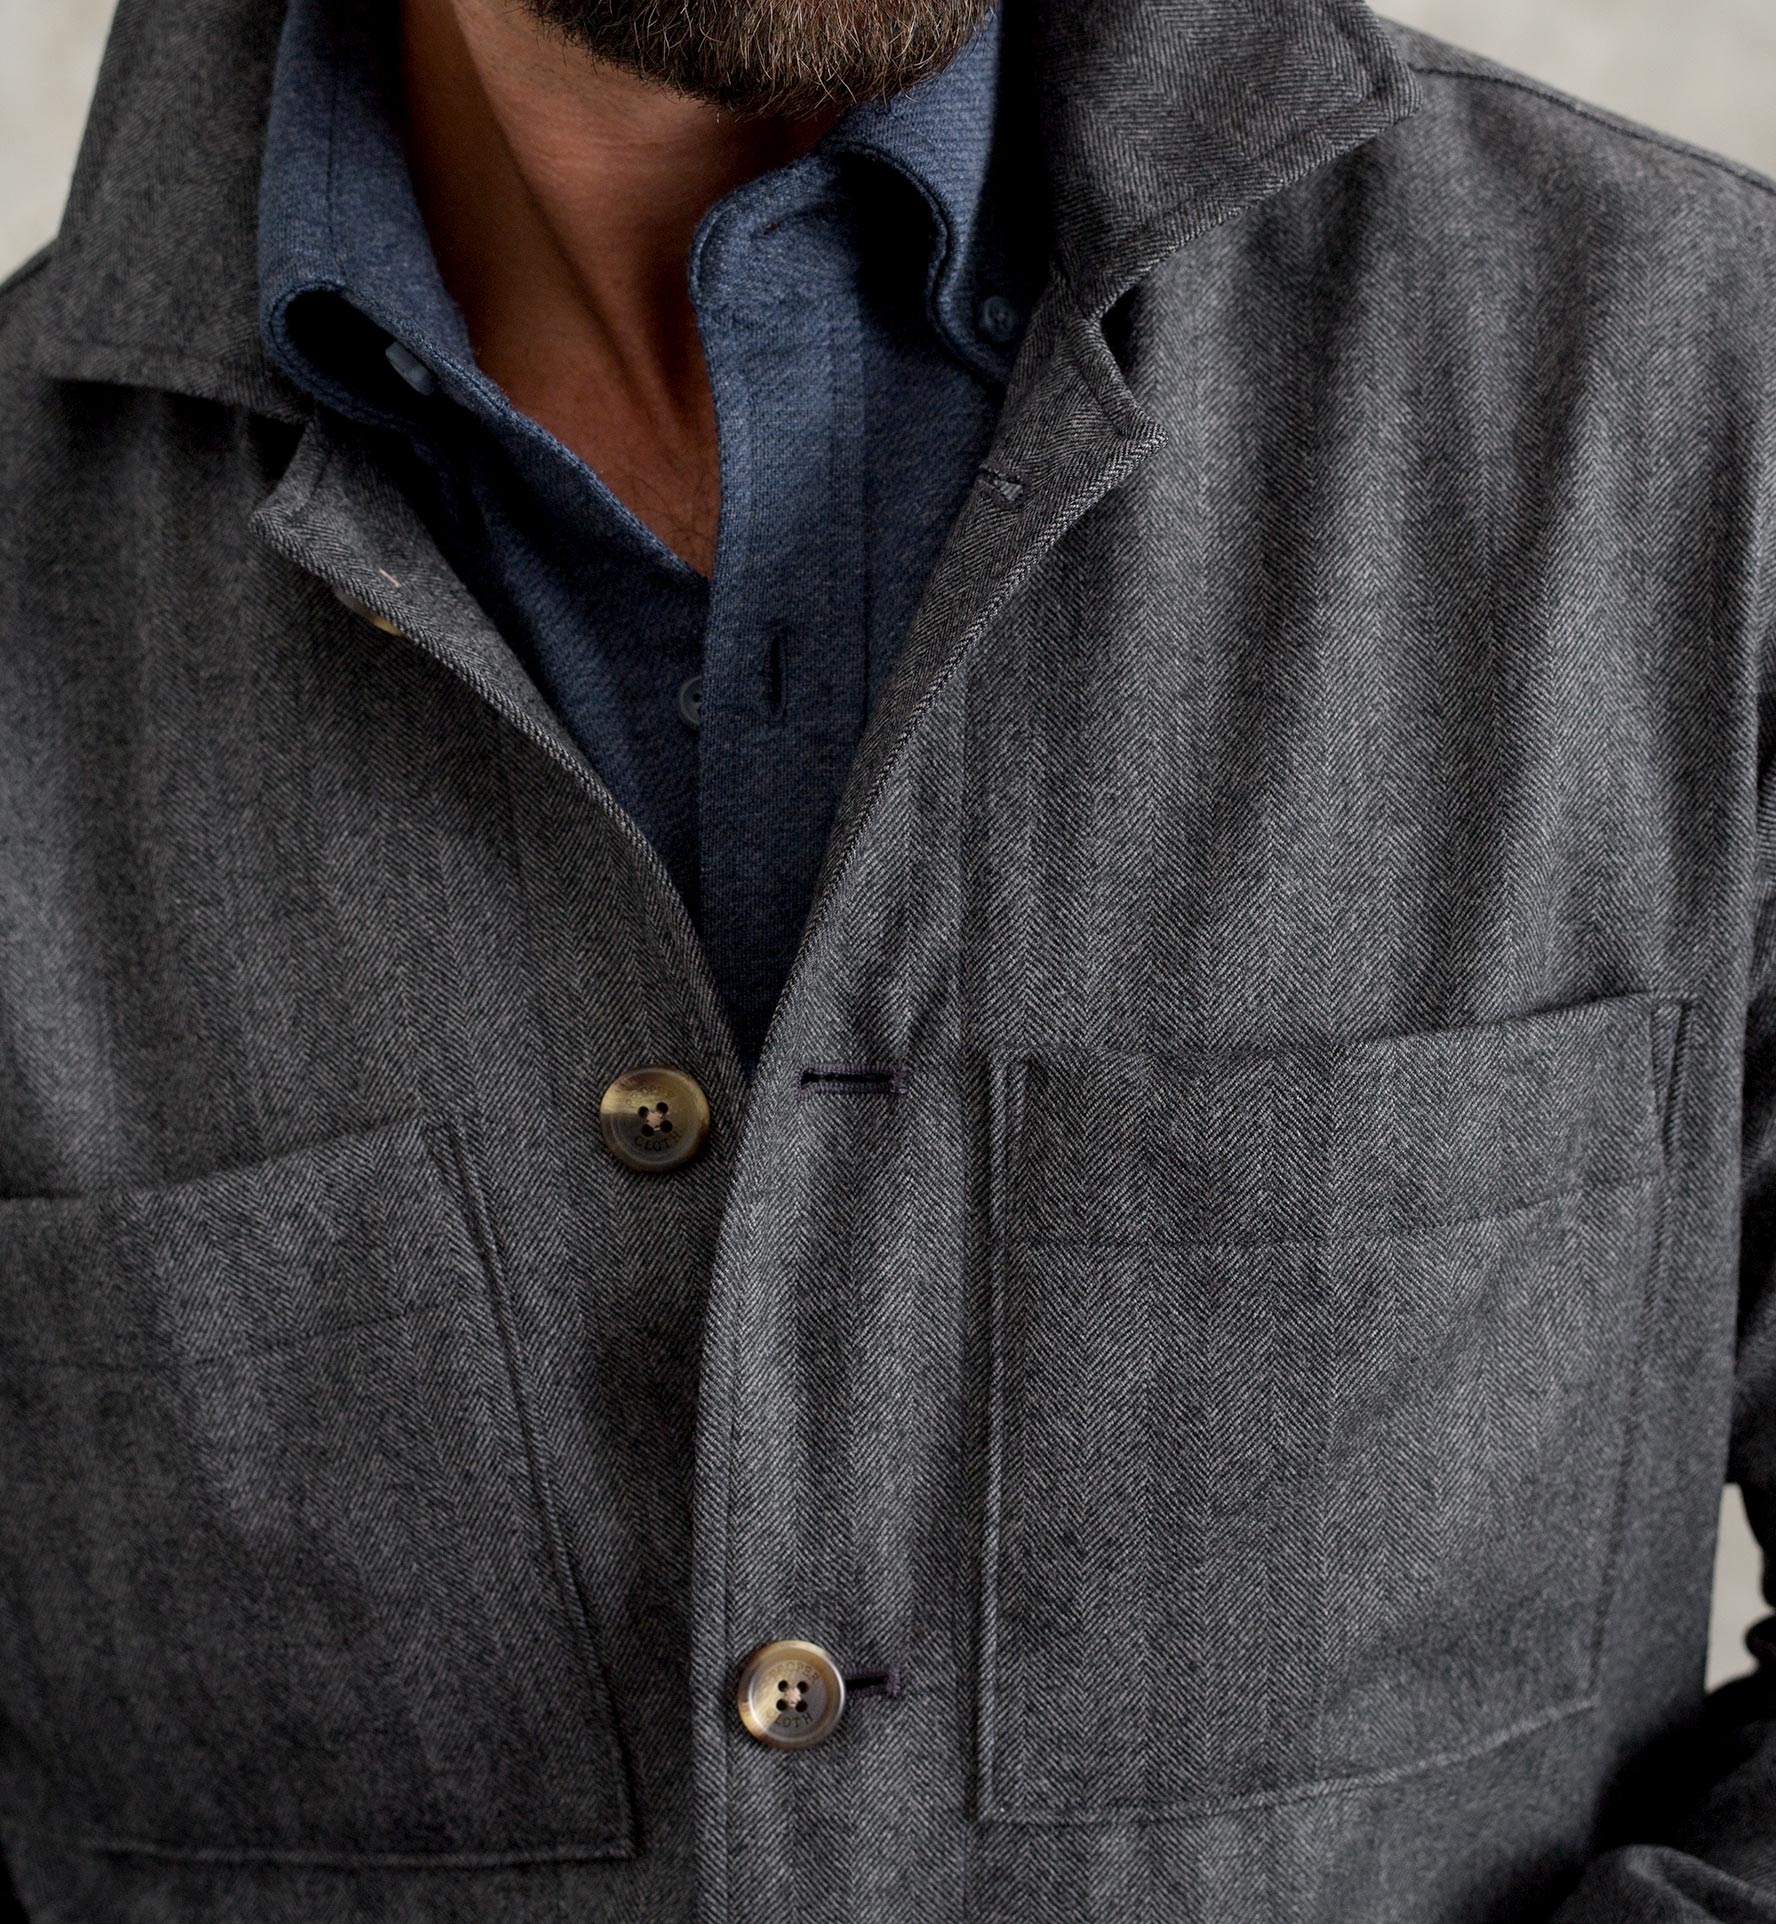 Charcoal Herringbone Wool Shirt Jacket by Proper Cloth